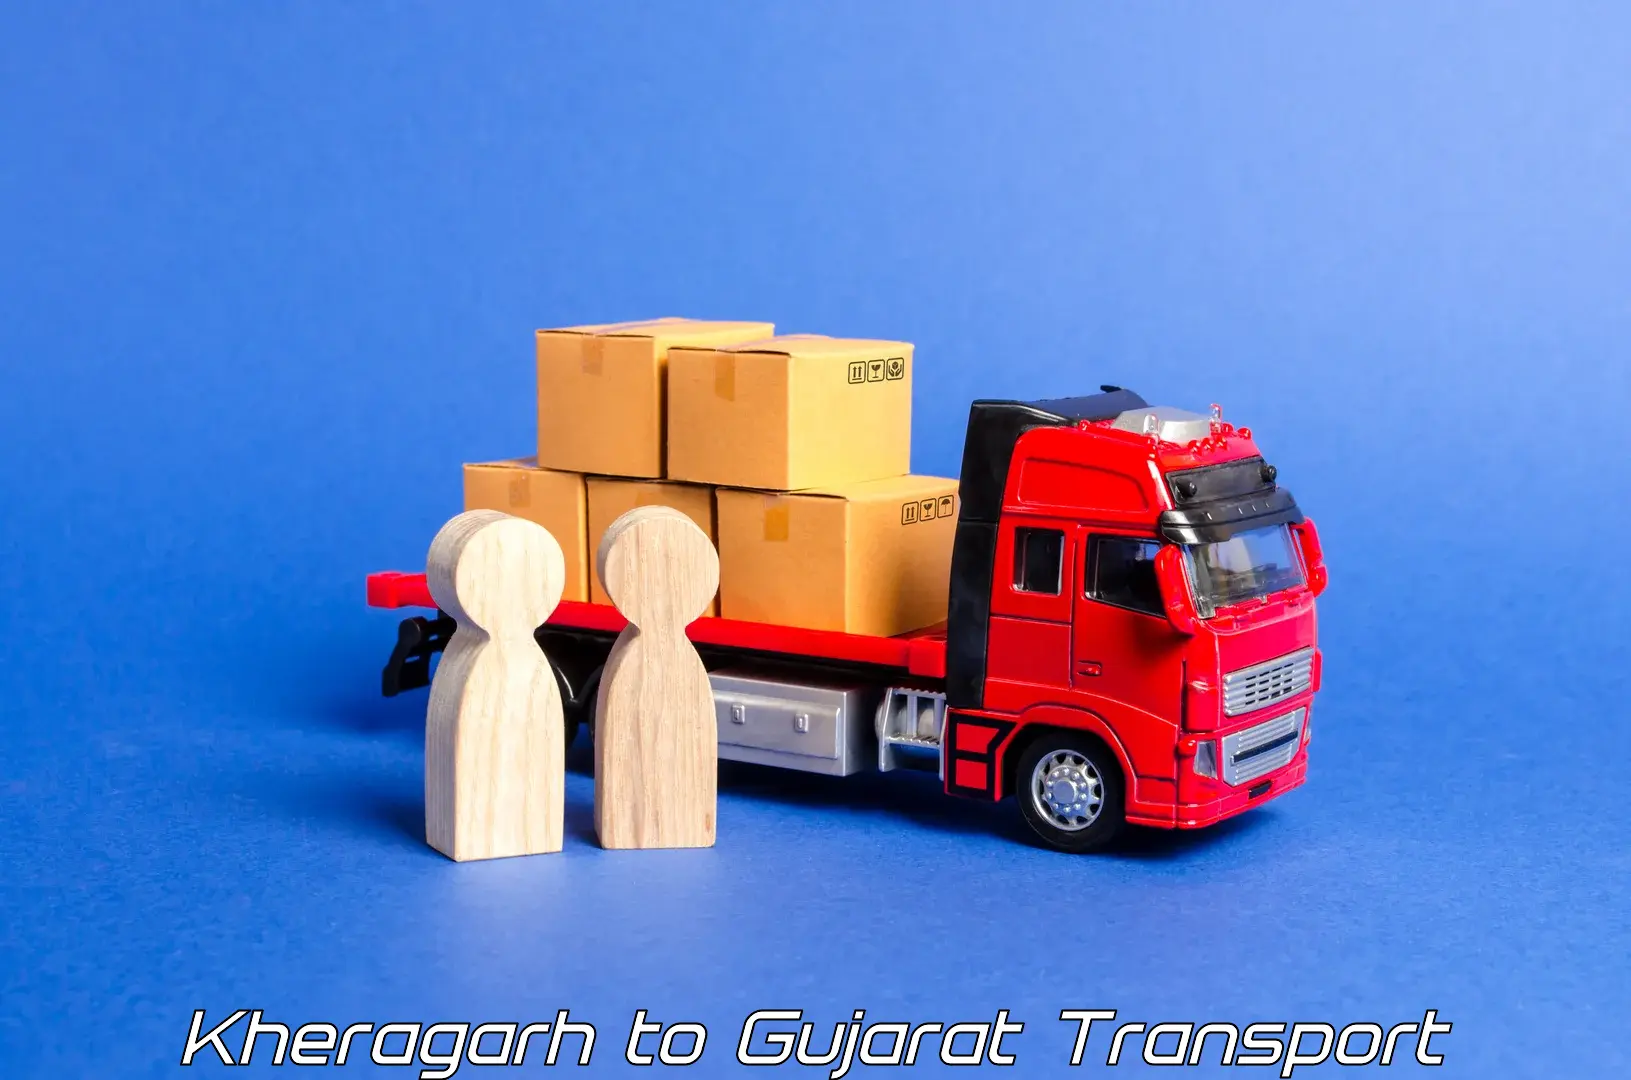 Furniture transport service Kheragarh to Patan Gujarat